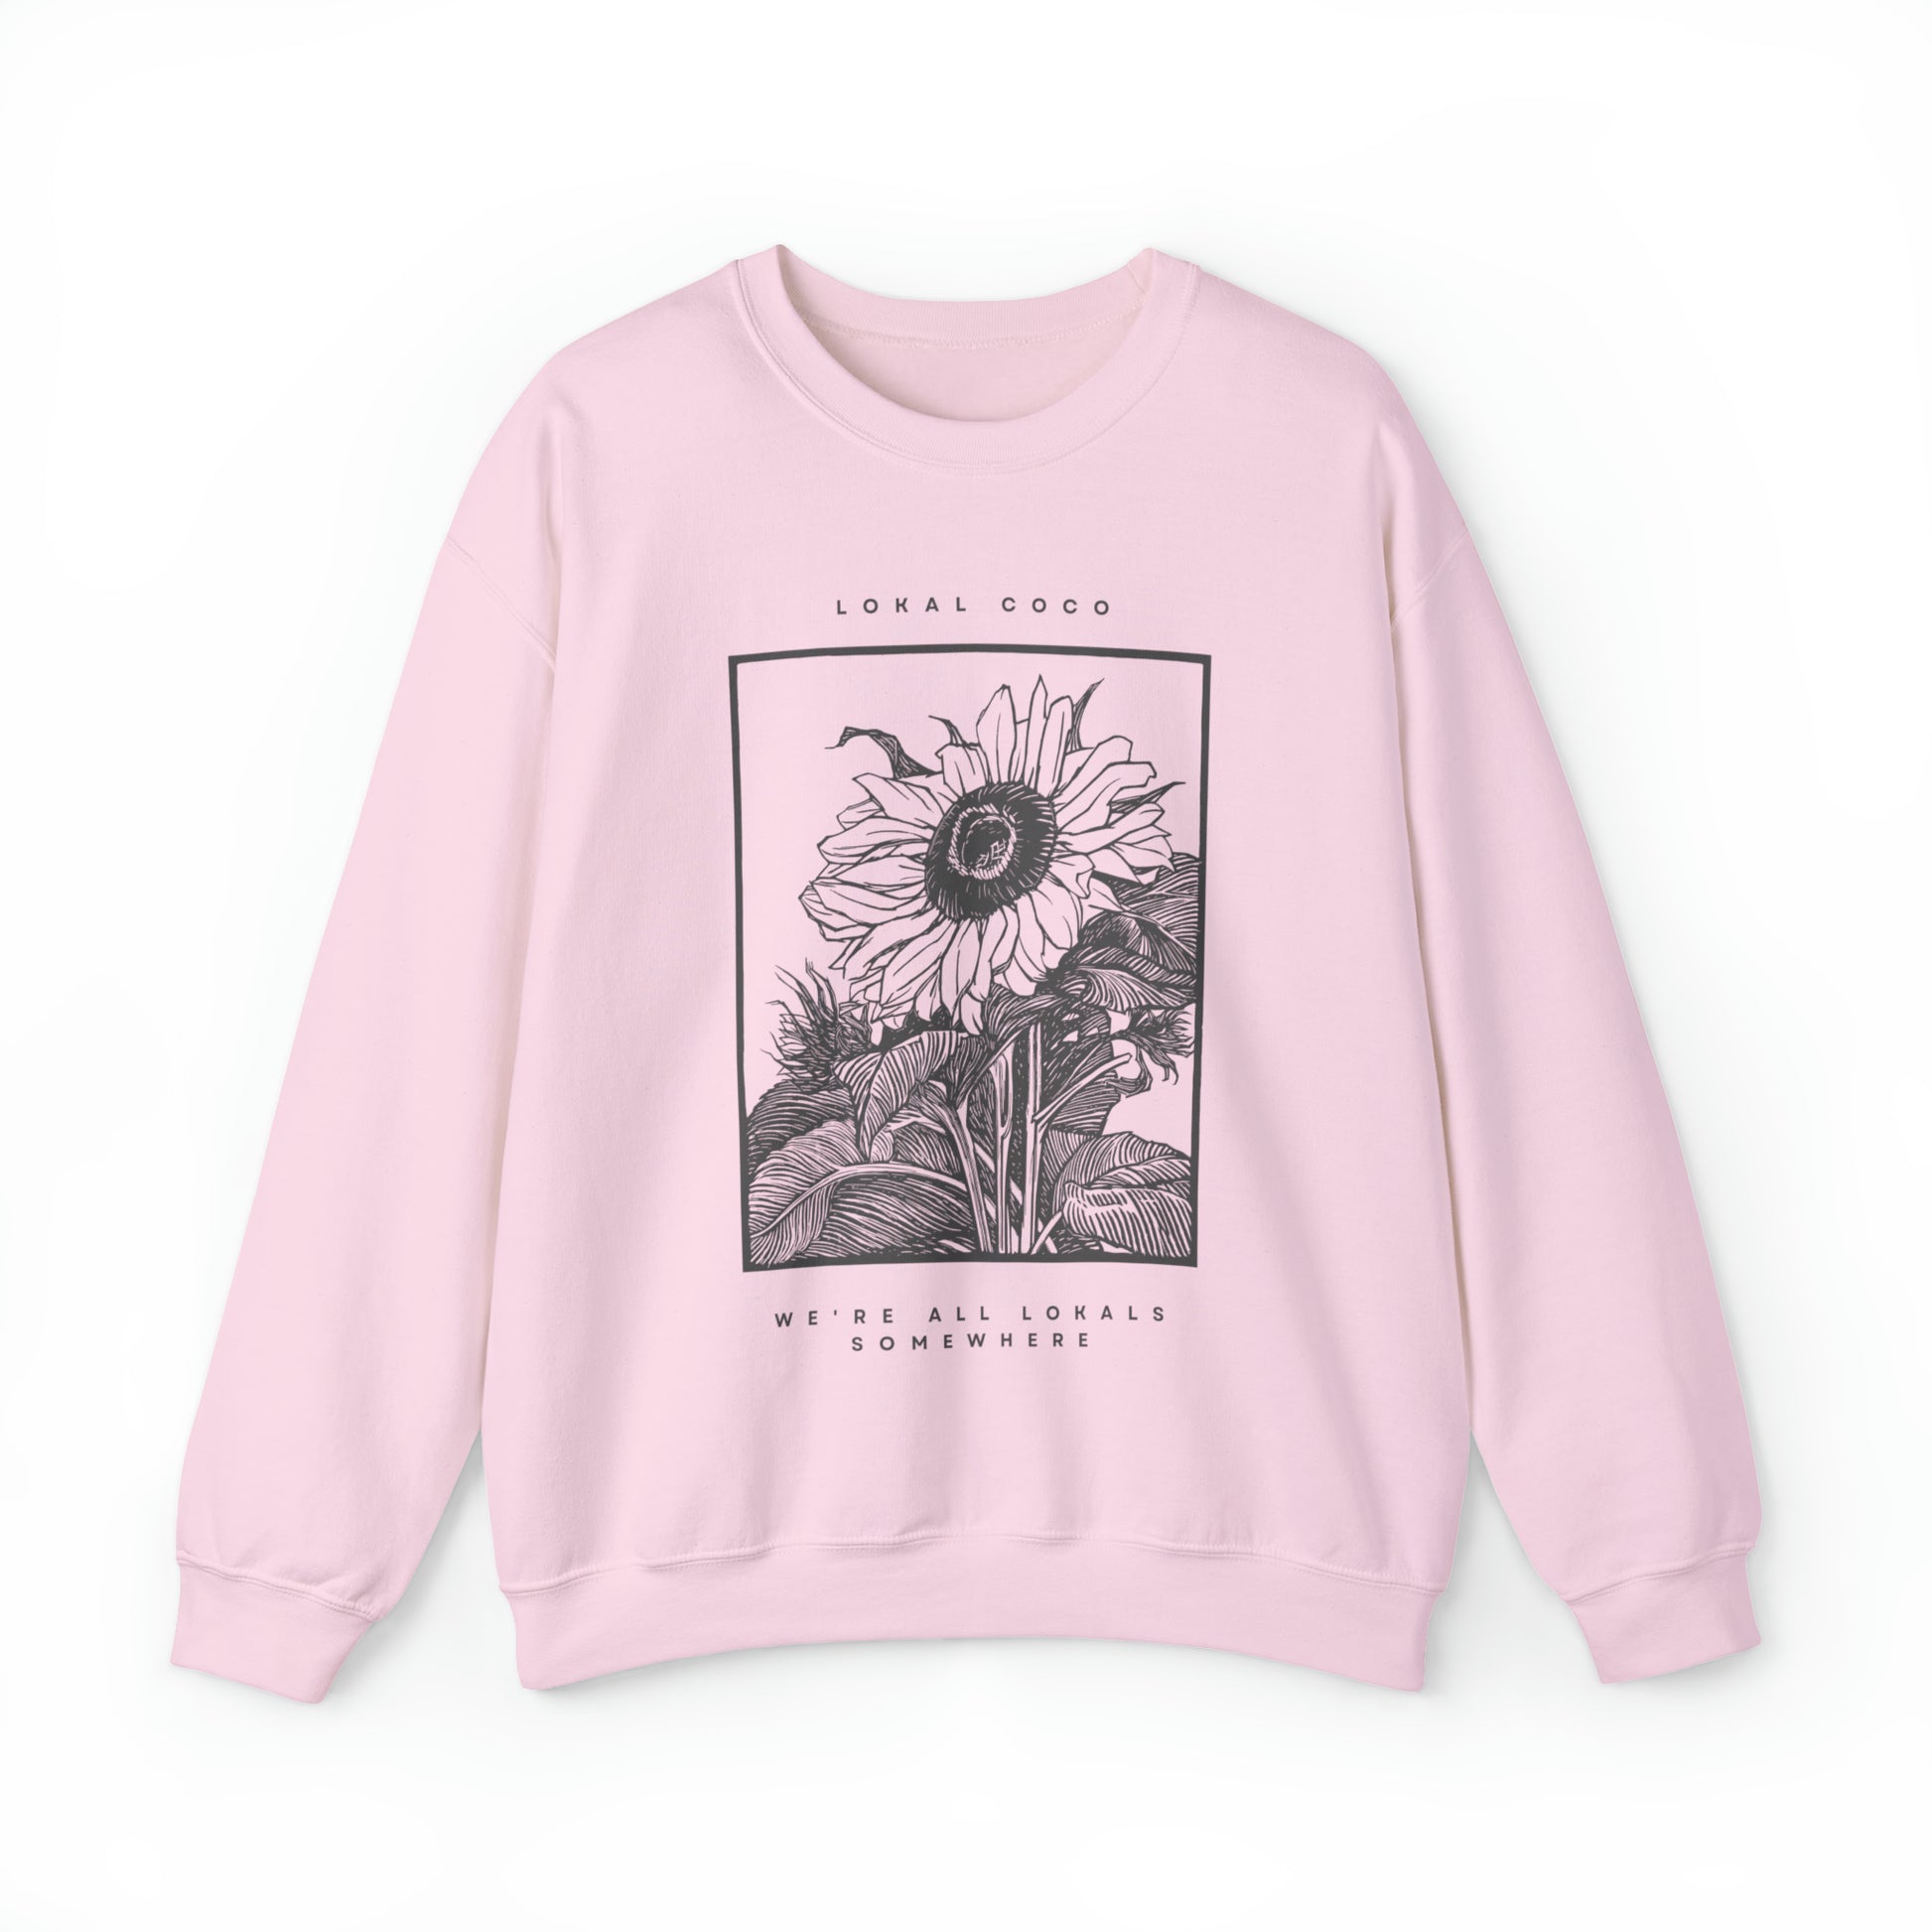 Sunflower Sweatshirt, Vintage Graphic Sweater